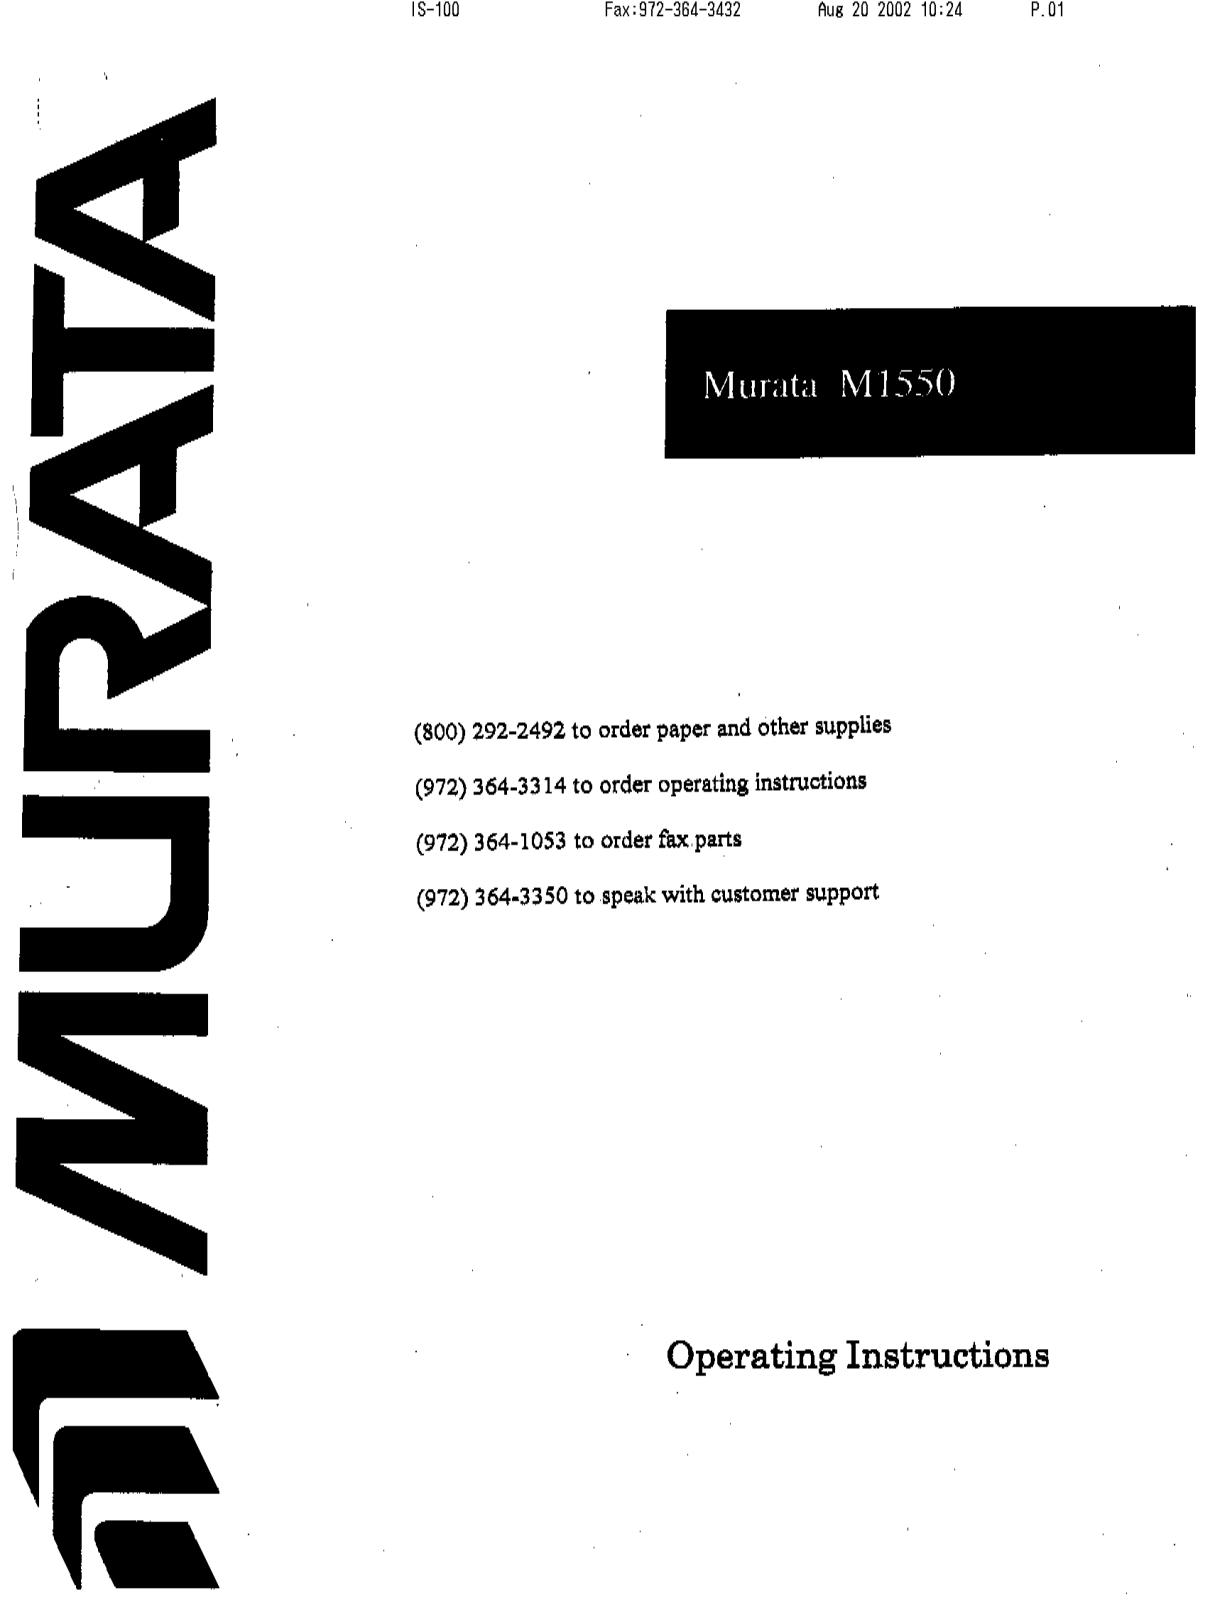 Muratec M-1550 Operating Manual